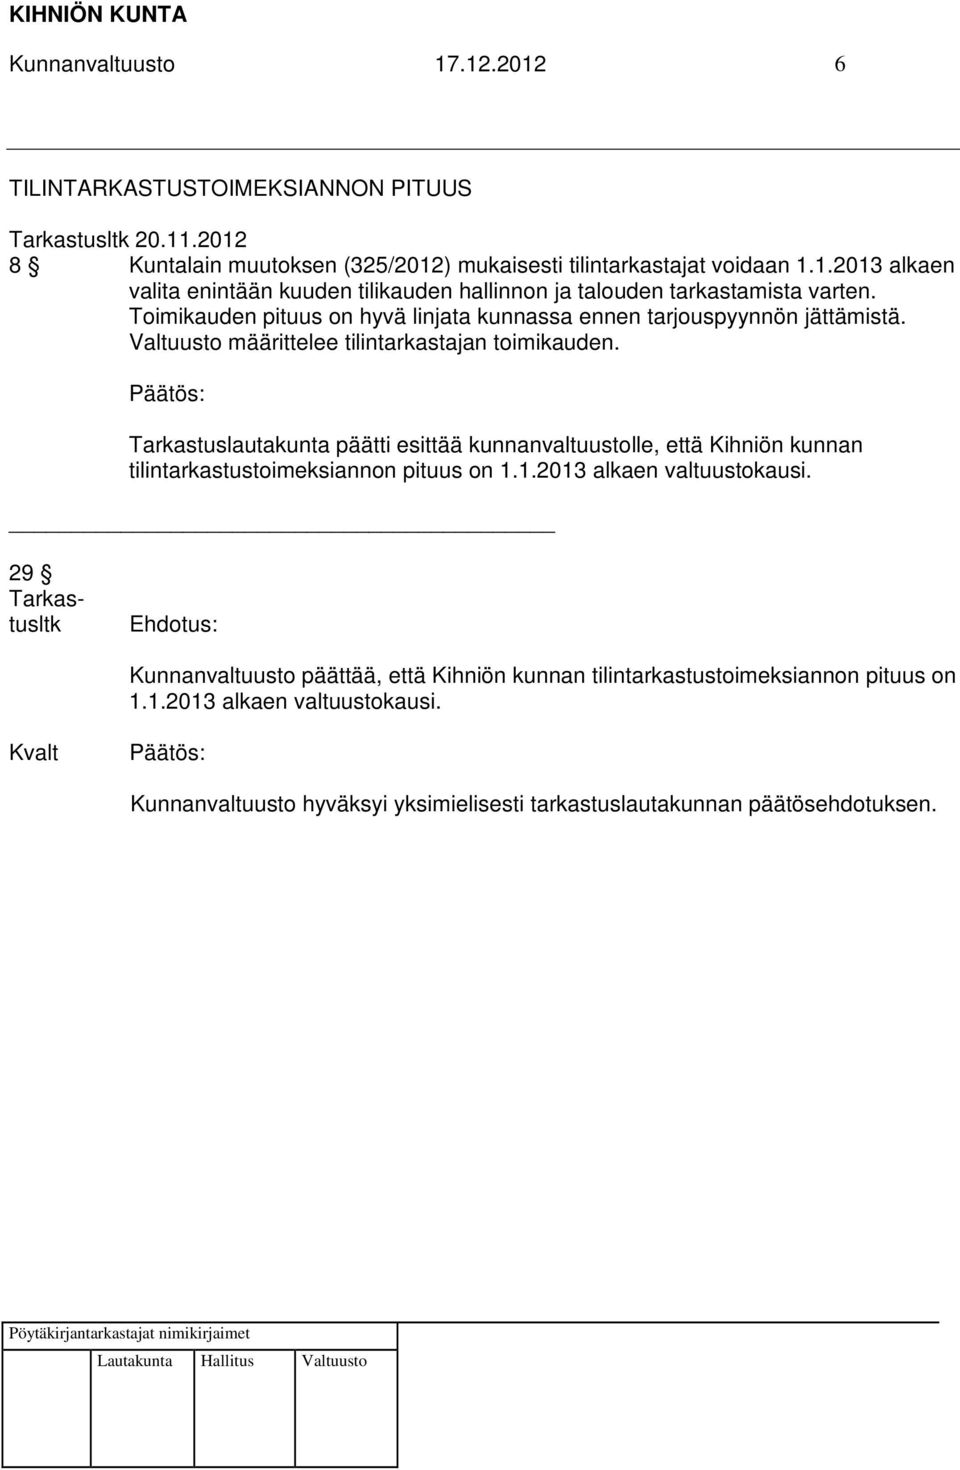 Tarkastuslautakunta päätti esittää kunnanvaltuustolle, että Kihniön kunnan tilintarkastustoimeksiannon pituus on 1.1.2013 alkaen valtuustokausi.